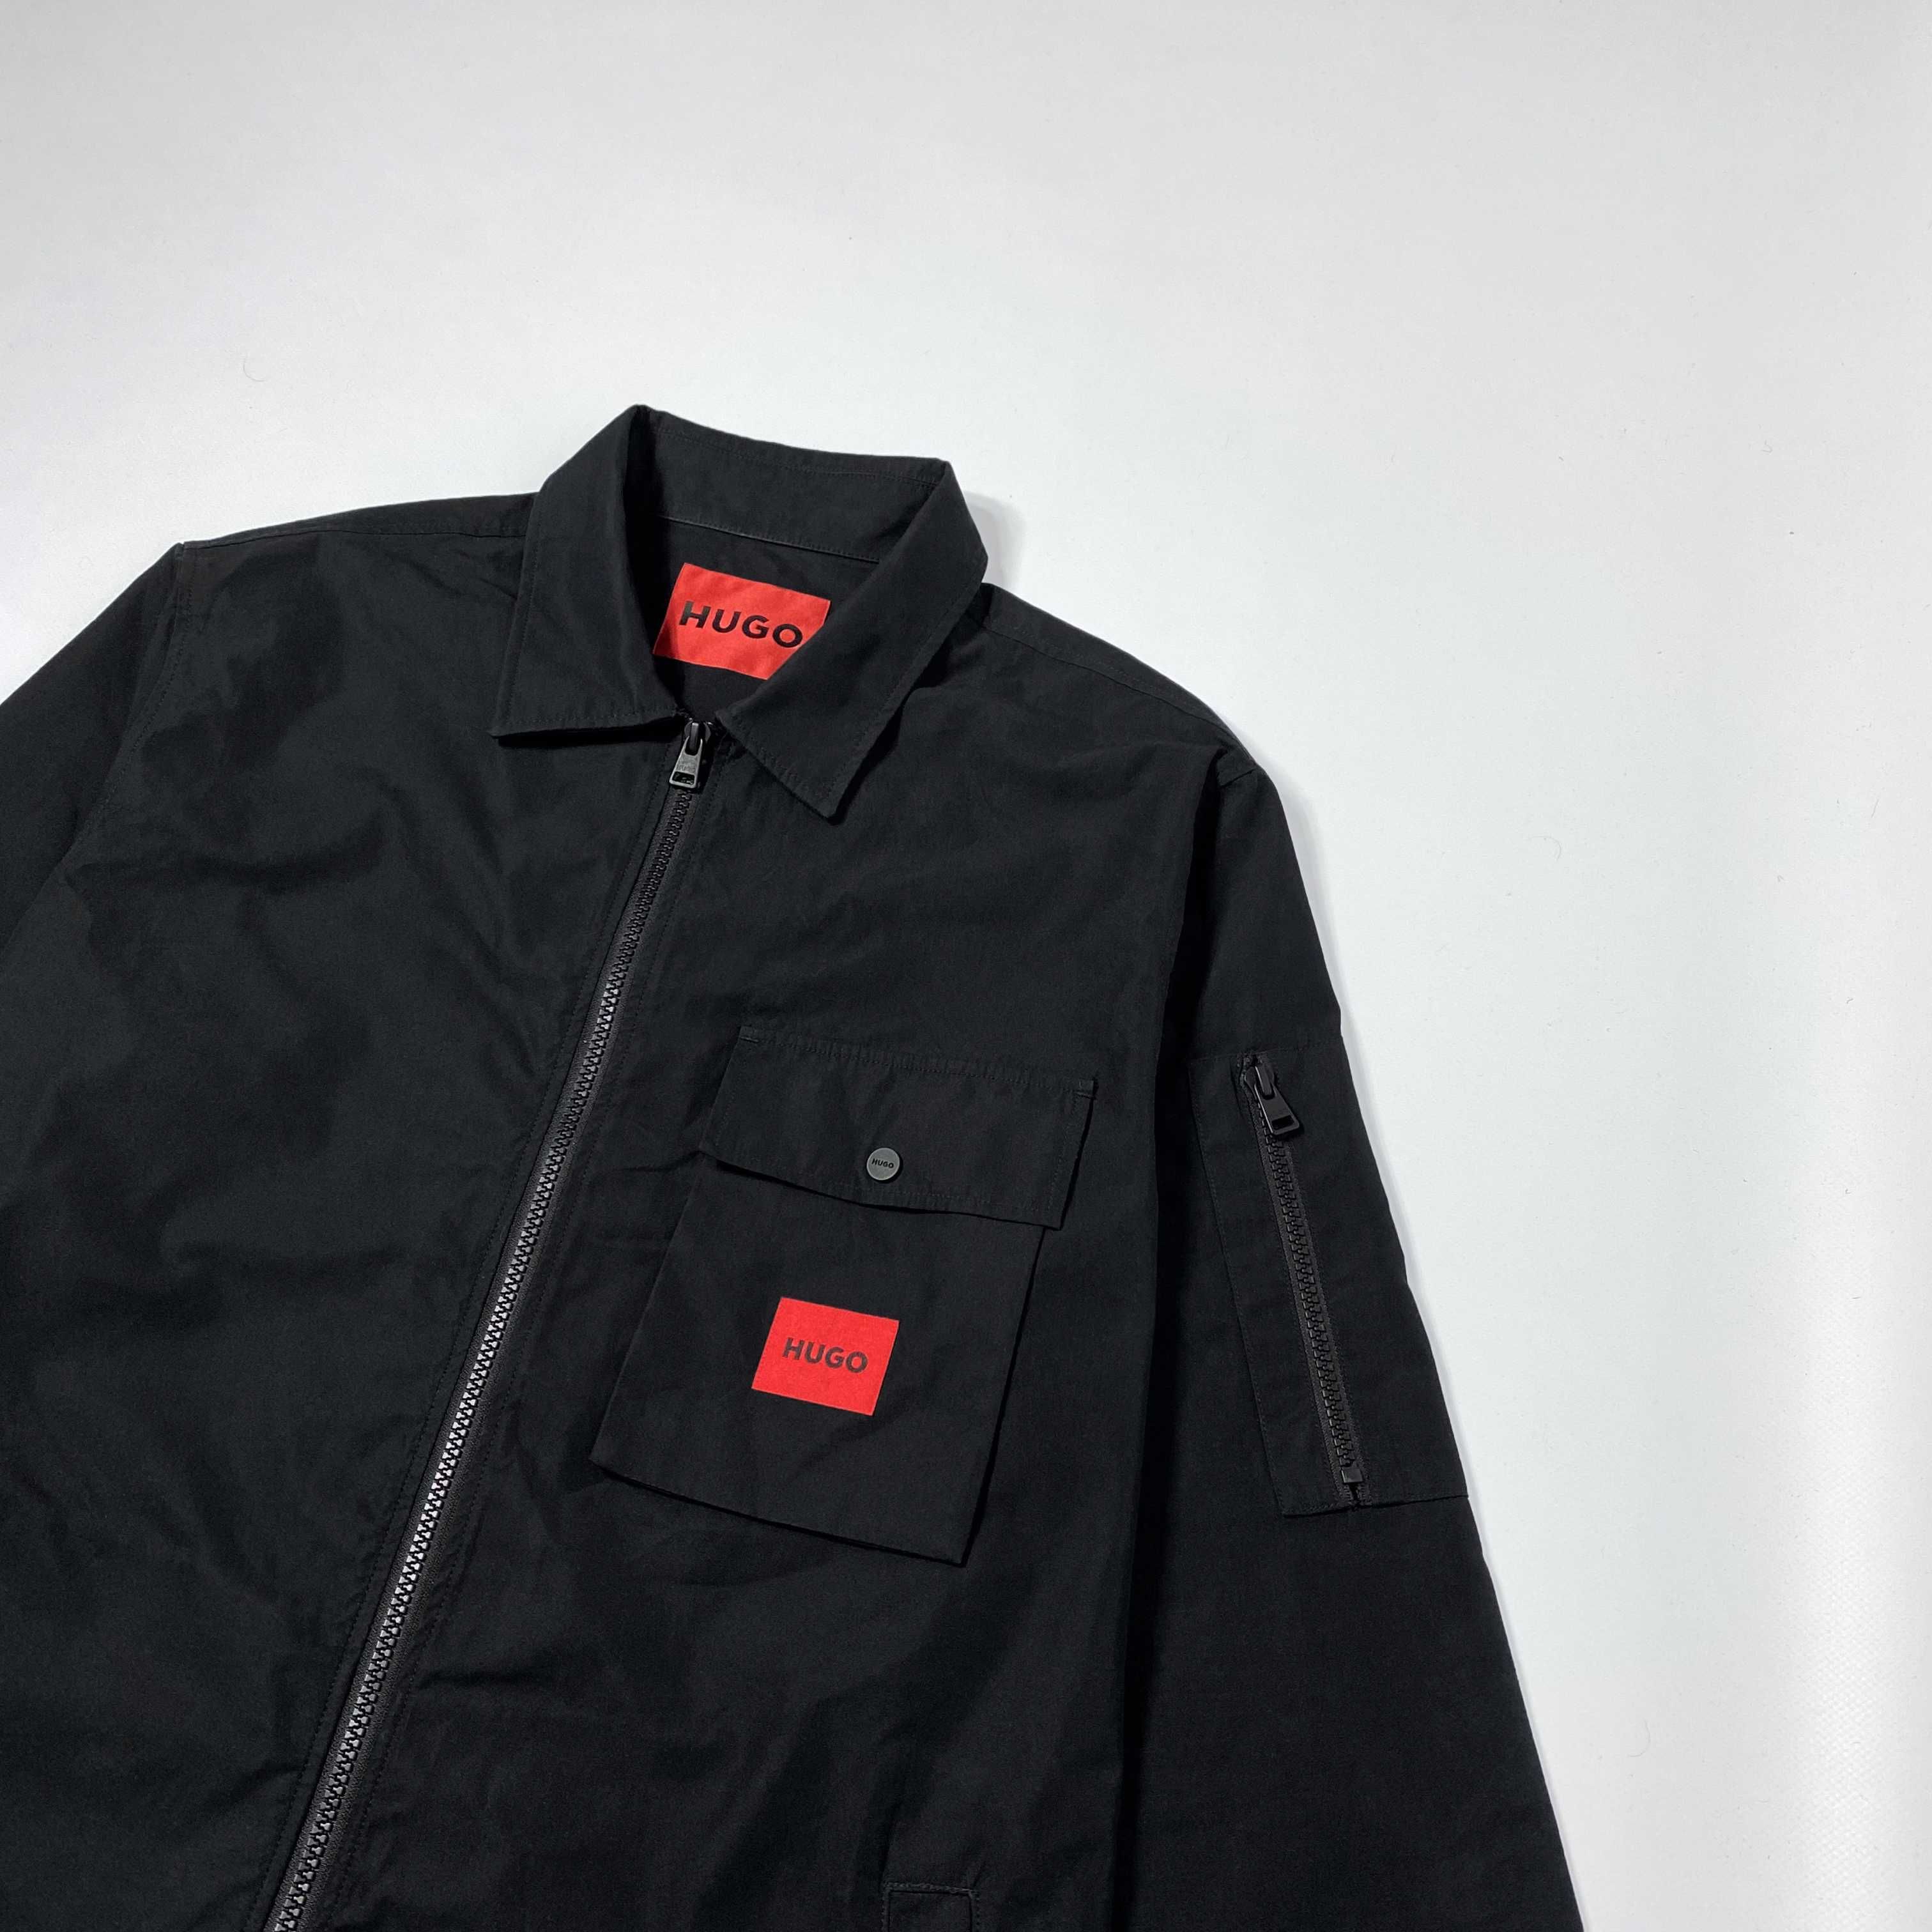 M L Ідеальний стан куртка з коміром 2022 року Hugo Boss Emmond jacket